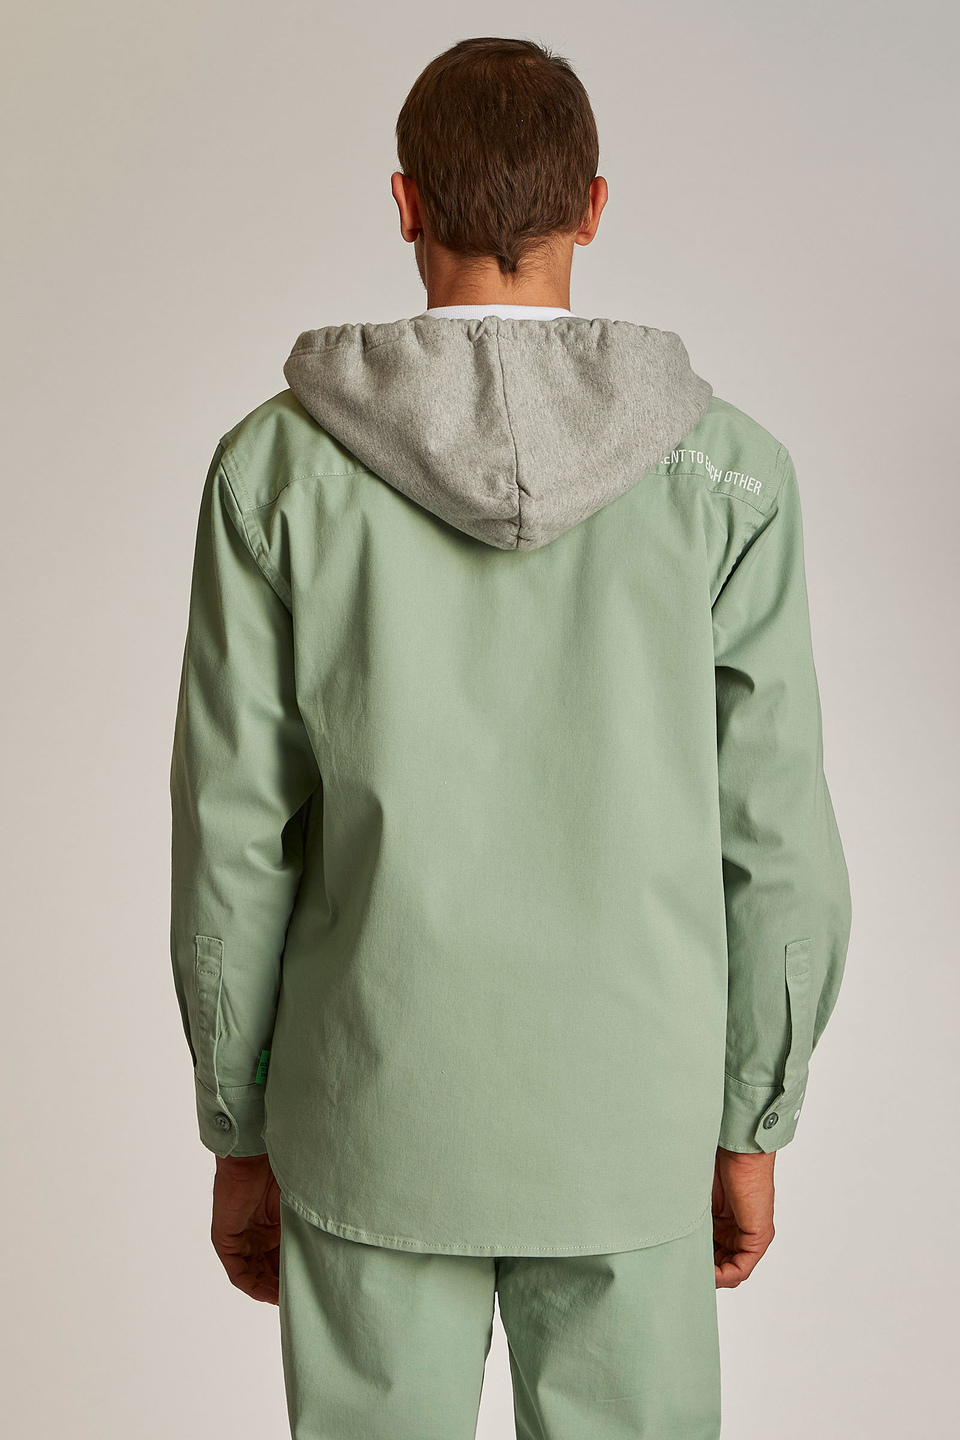 Giacca da uomo in cotone 100% con cappuccio modello over - La Martina - Official Online Shop